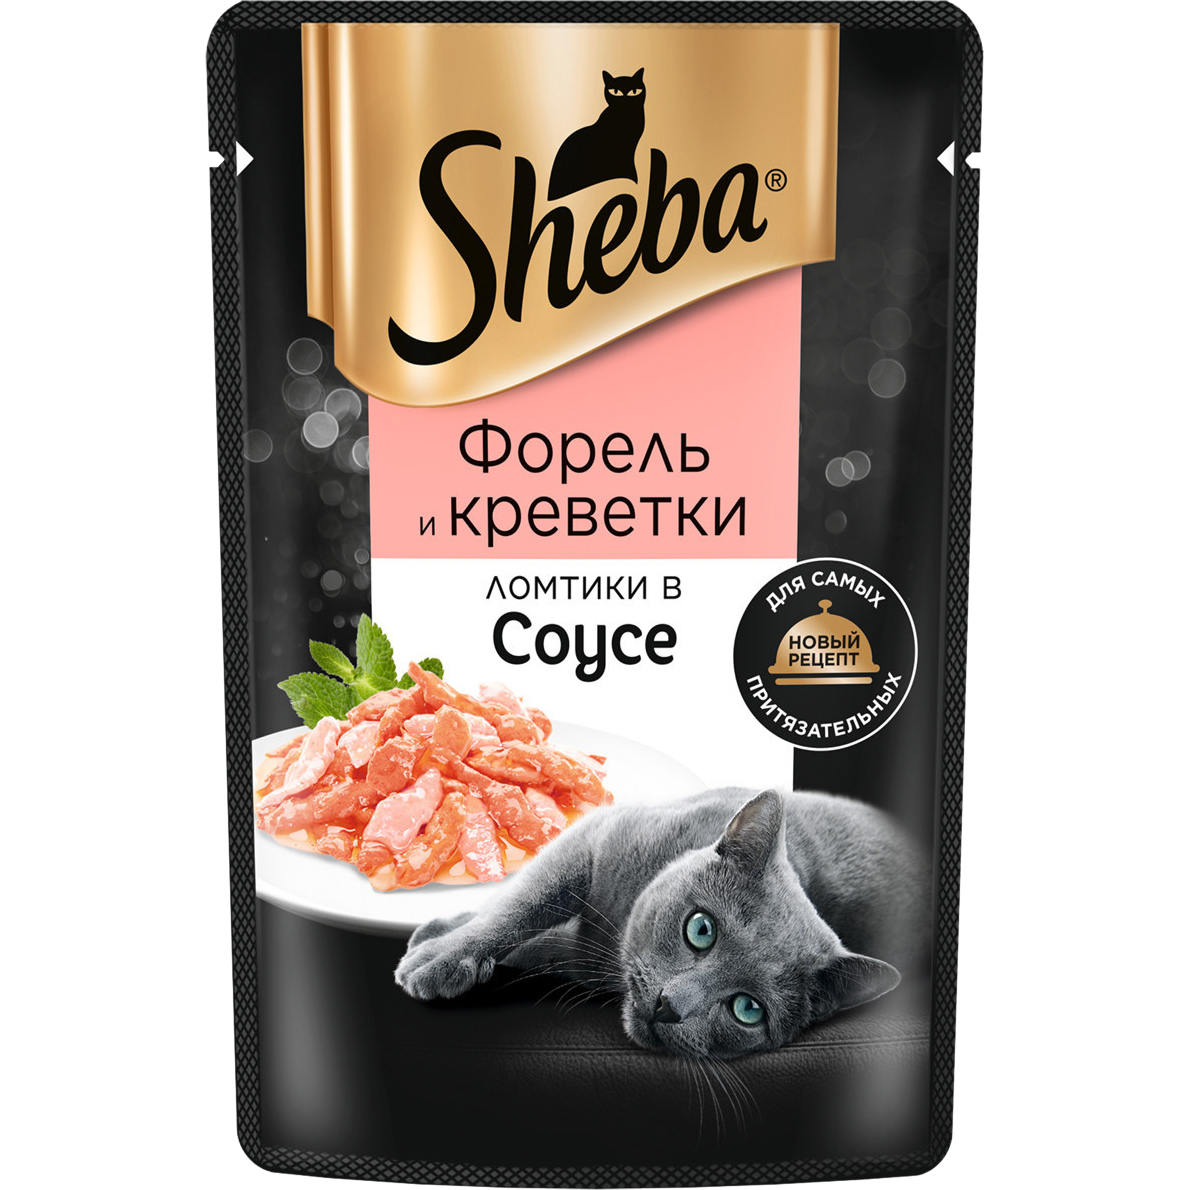 Корм для кошек Sheba Форель и креветки ломтики в соусе 75 г sheba консервы для кошек sheba pleasure с форелью и креветками пауч 85 гр 24 шт